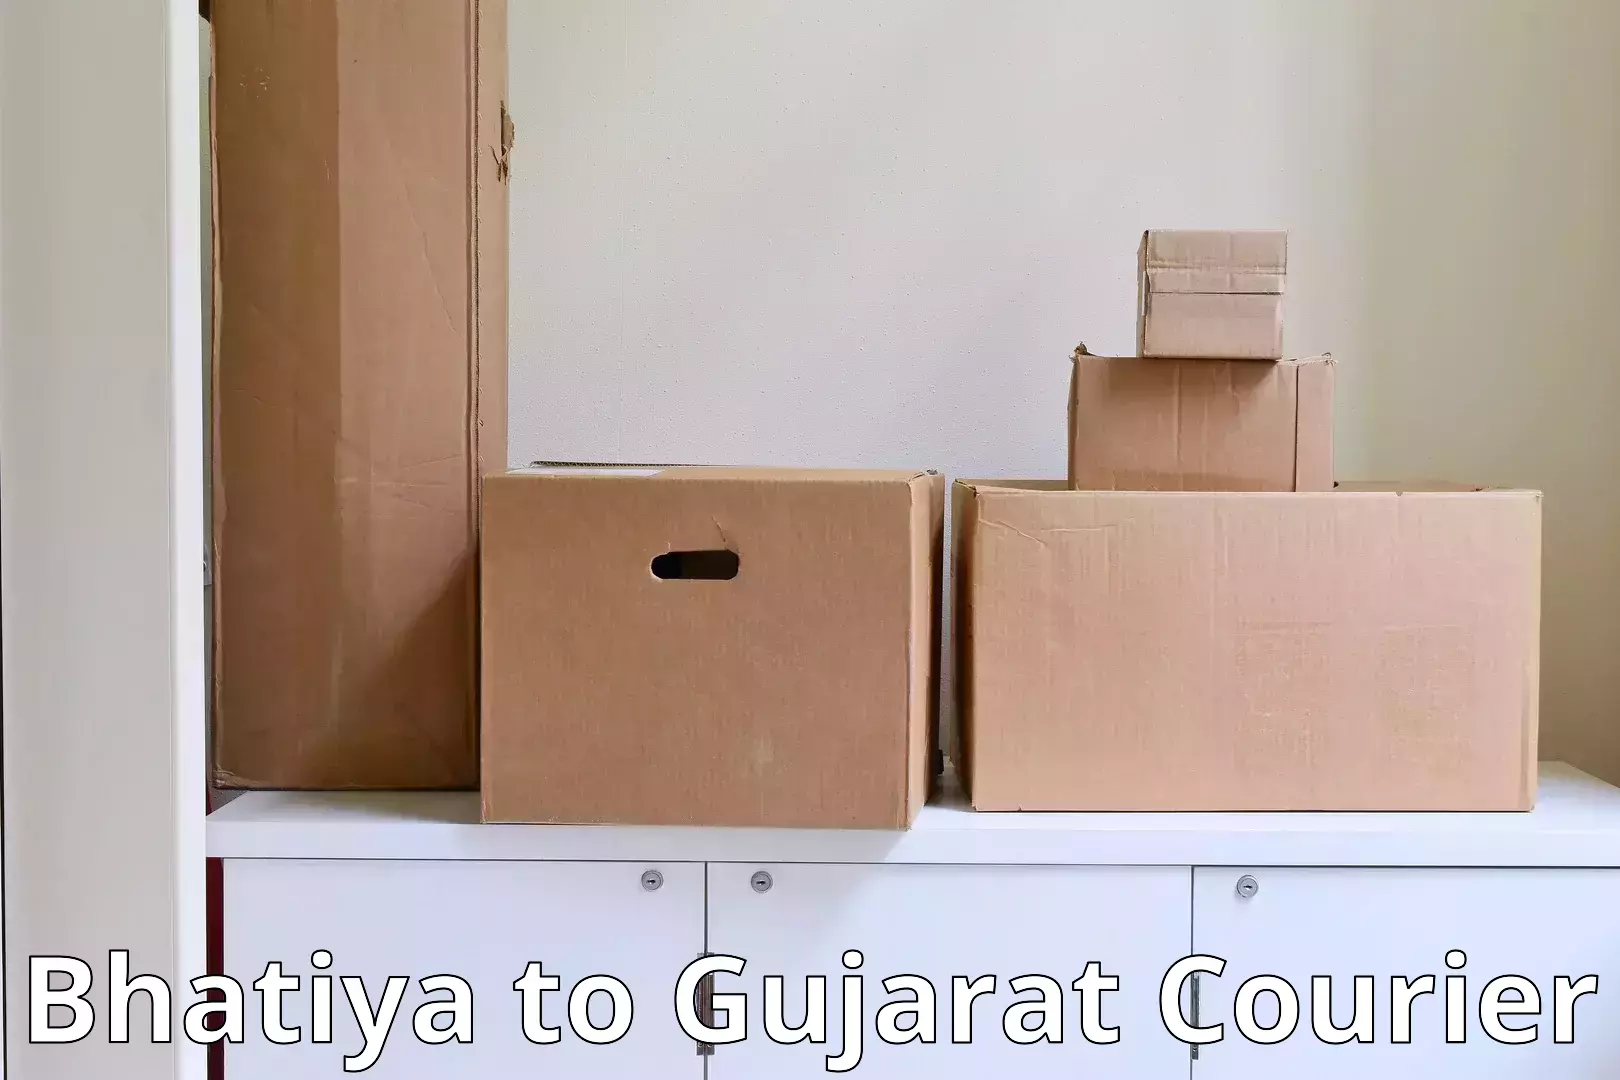 Residential moving experts Bhatiya to Patan Gujarat